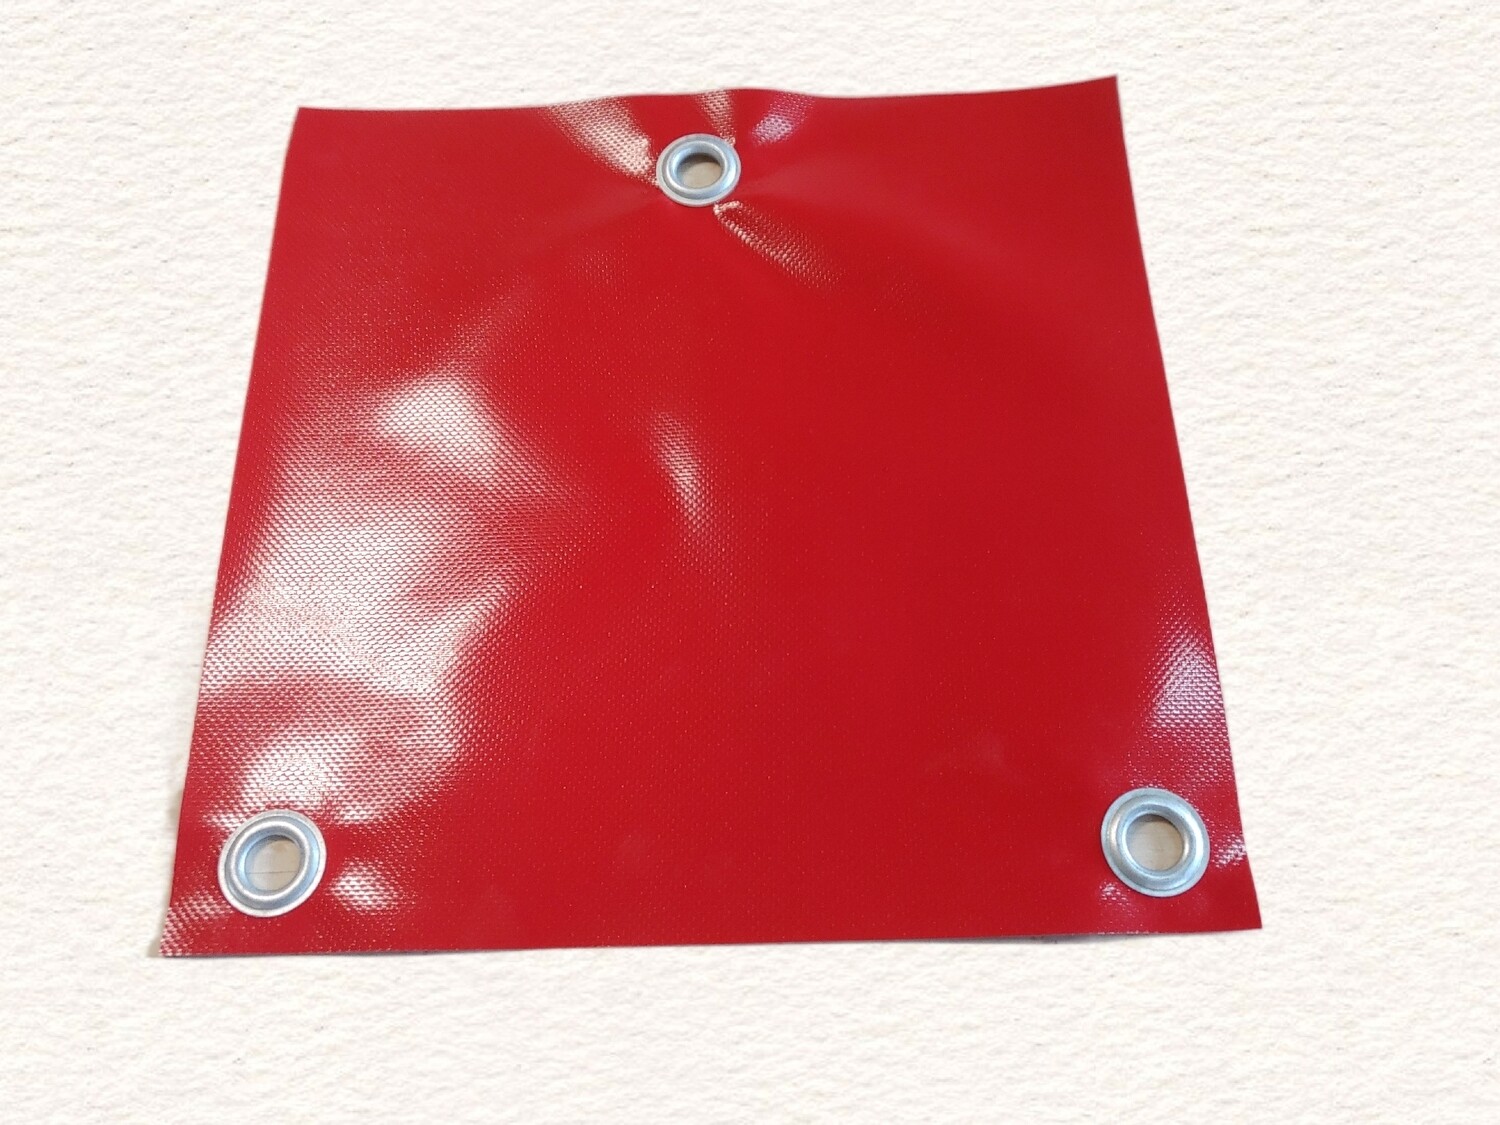 PVC Universal – Warnflagge/Warnfahne 30cm x 30cm rot mit 3 rostfreien  Rundösen Ø16mm zur einfachen & sicheren Befestigung an überstehenden Lasten  –